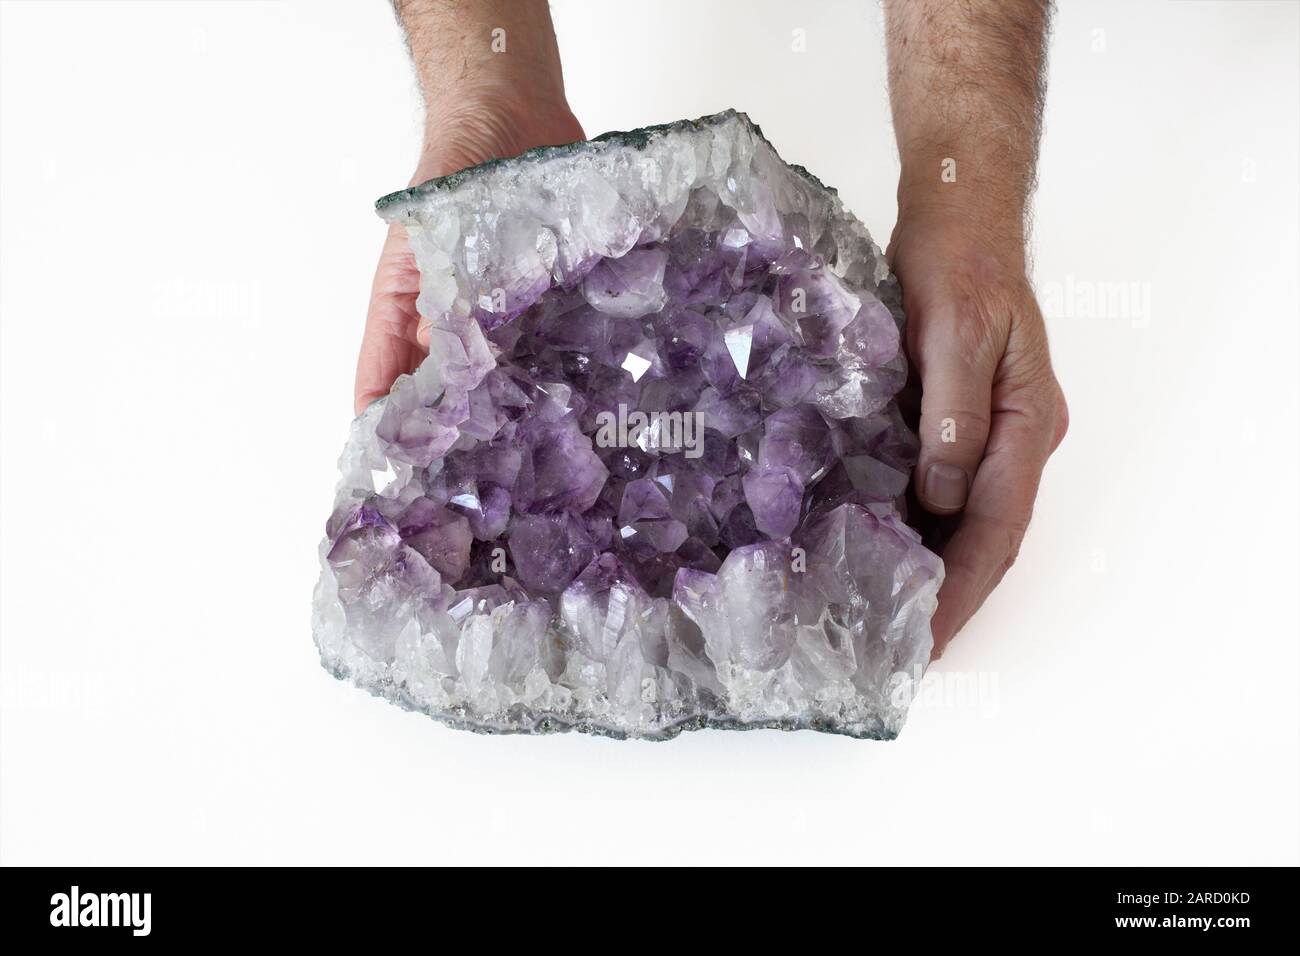 Eine Person, die eine Probe Amethyst hält und die freiliegende Kristallhöhle in einem Felsenabschnitt zeigt. Stockfoto